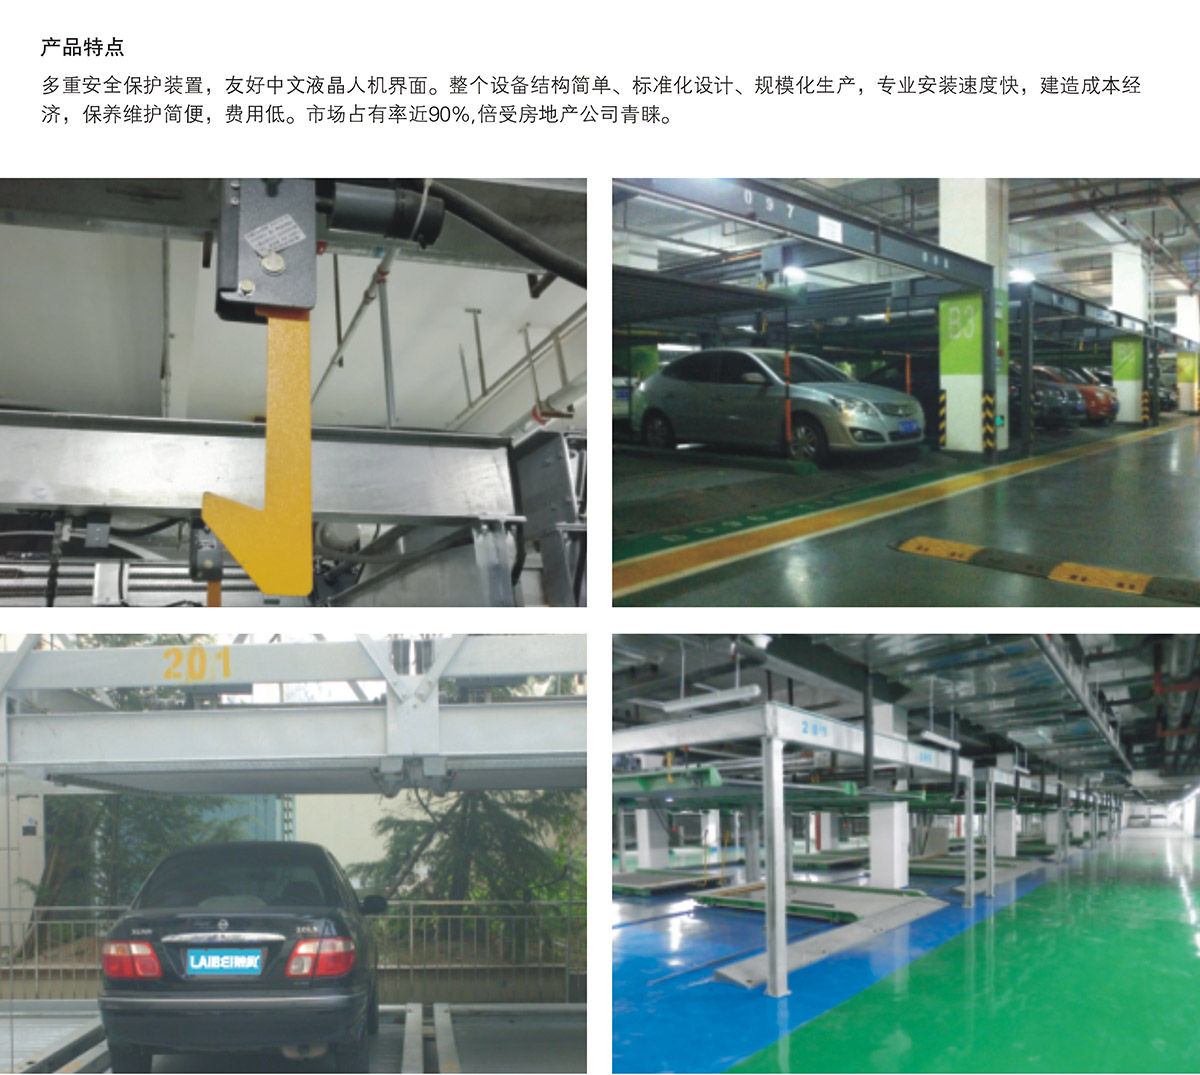 智能停车单列PSH2二层升降横移立体车库设备产品特点.jpg